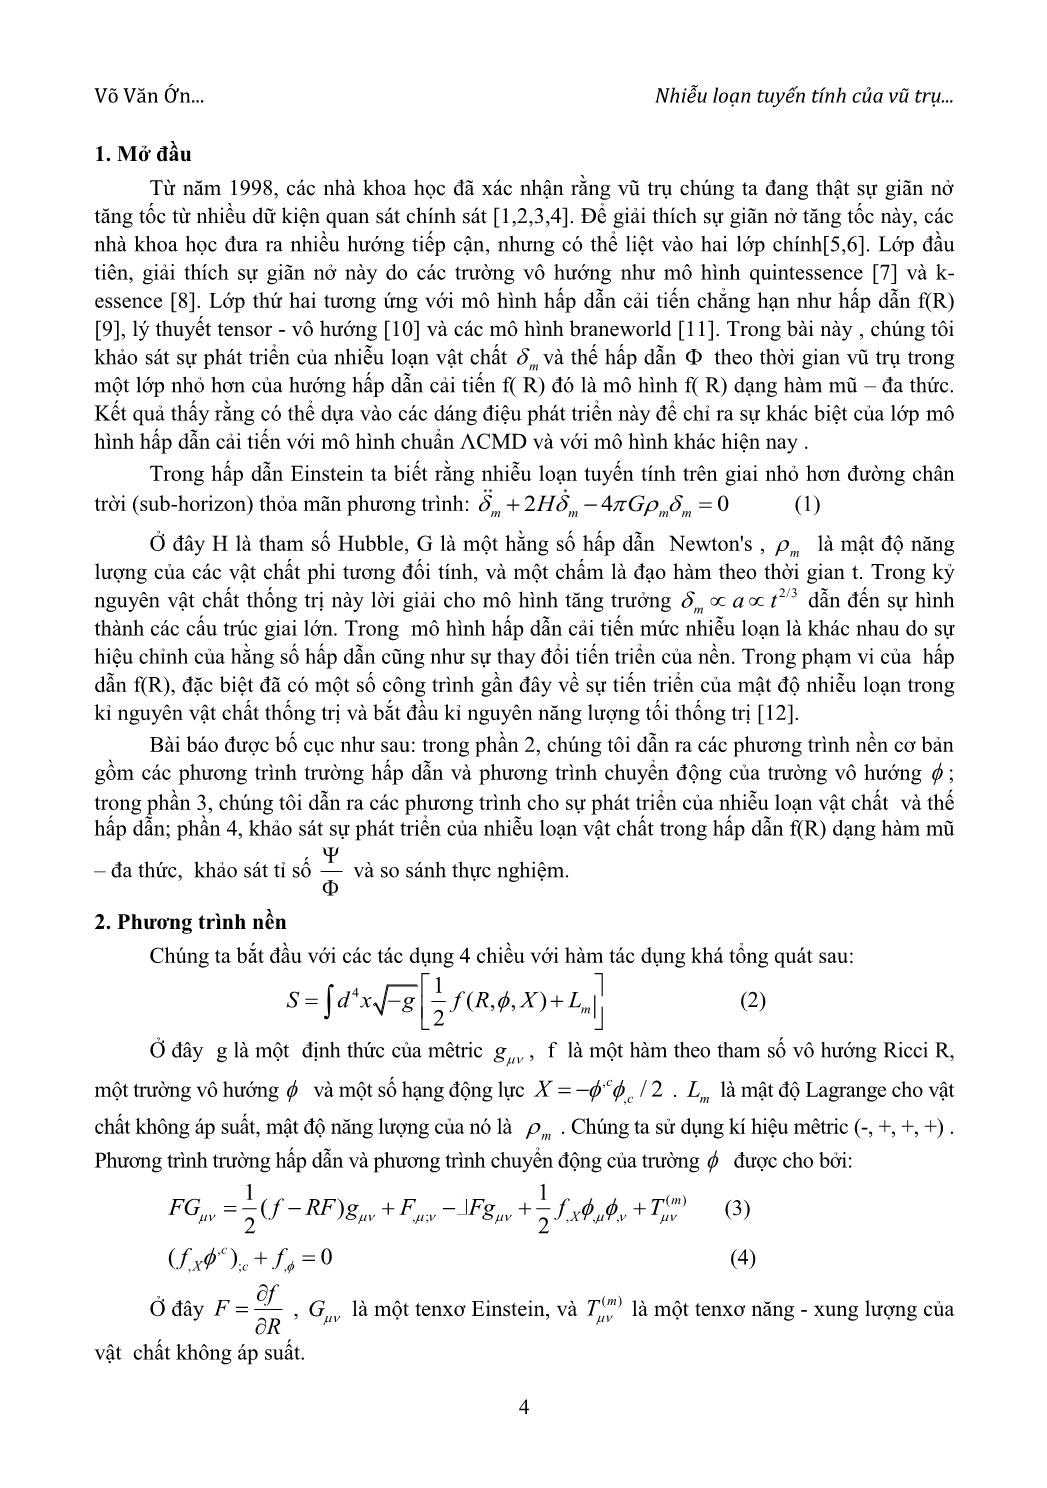 Nhiễu loạn tuyến tính của vũ trụ trong lớp mô hình hấp dẫn cải tiến f(R) dạng hàm mũ - đa thức trang 2